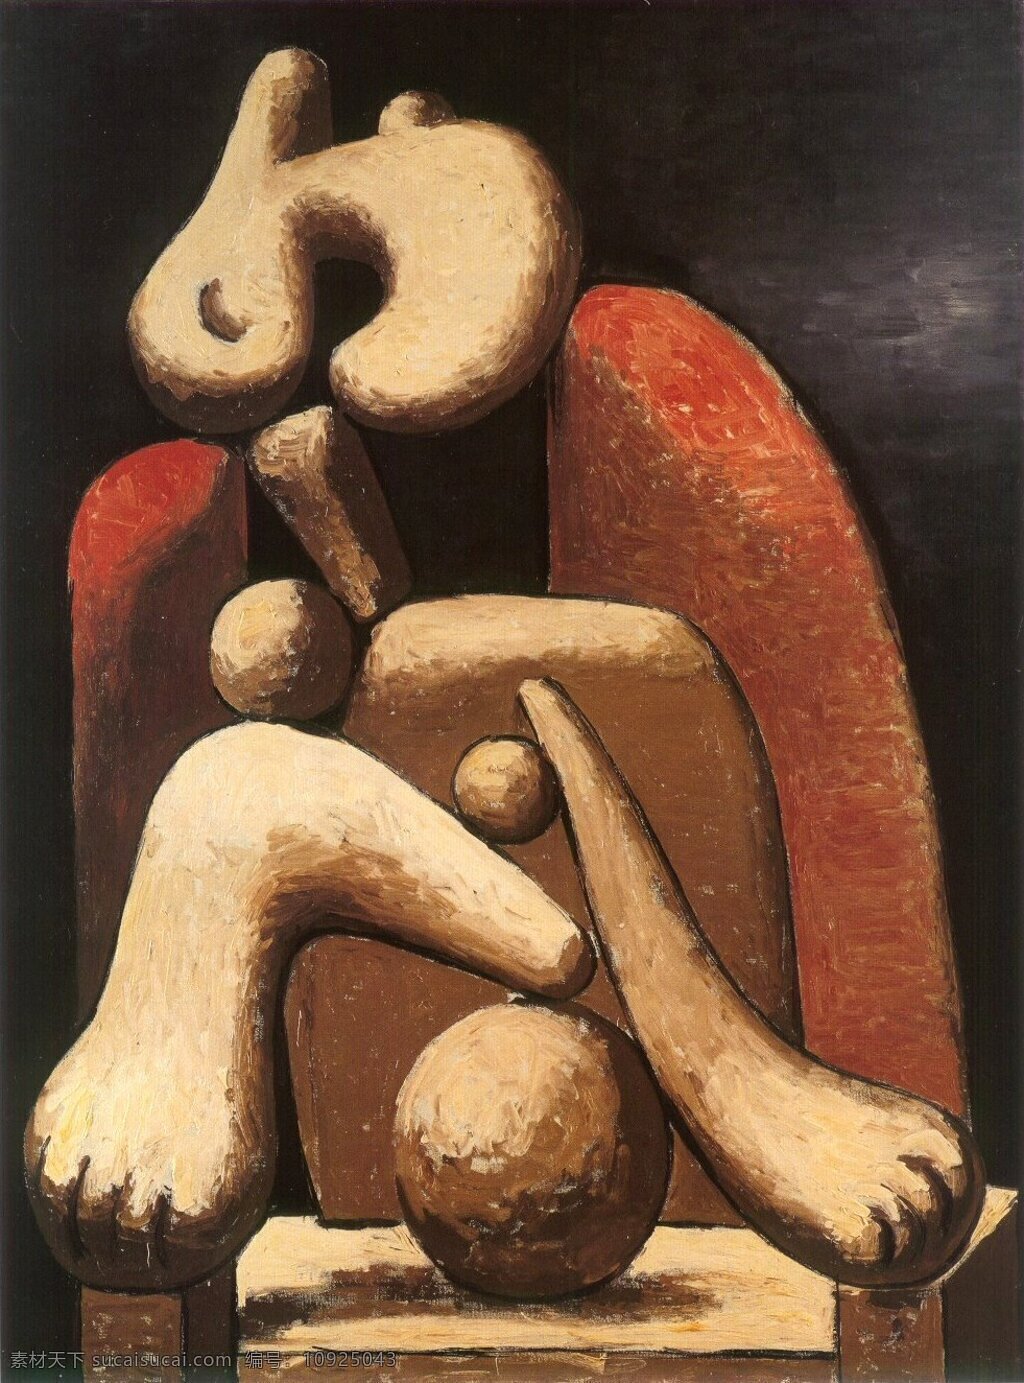 rouge 西班牙 画家 巴勃罗 毕加索 抽象 油画 人物 人体 装饰画 fauteuil au femme 1932 装饰素材